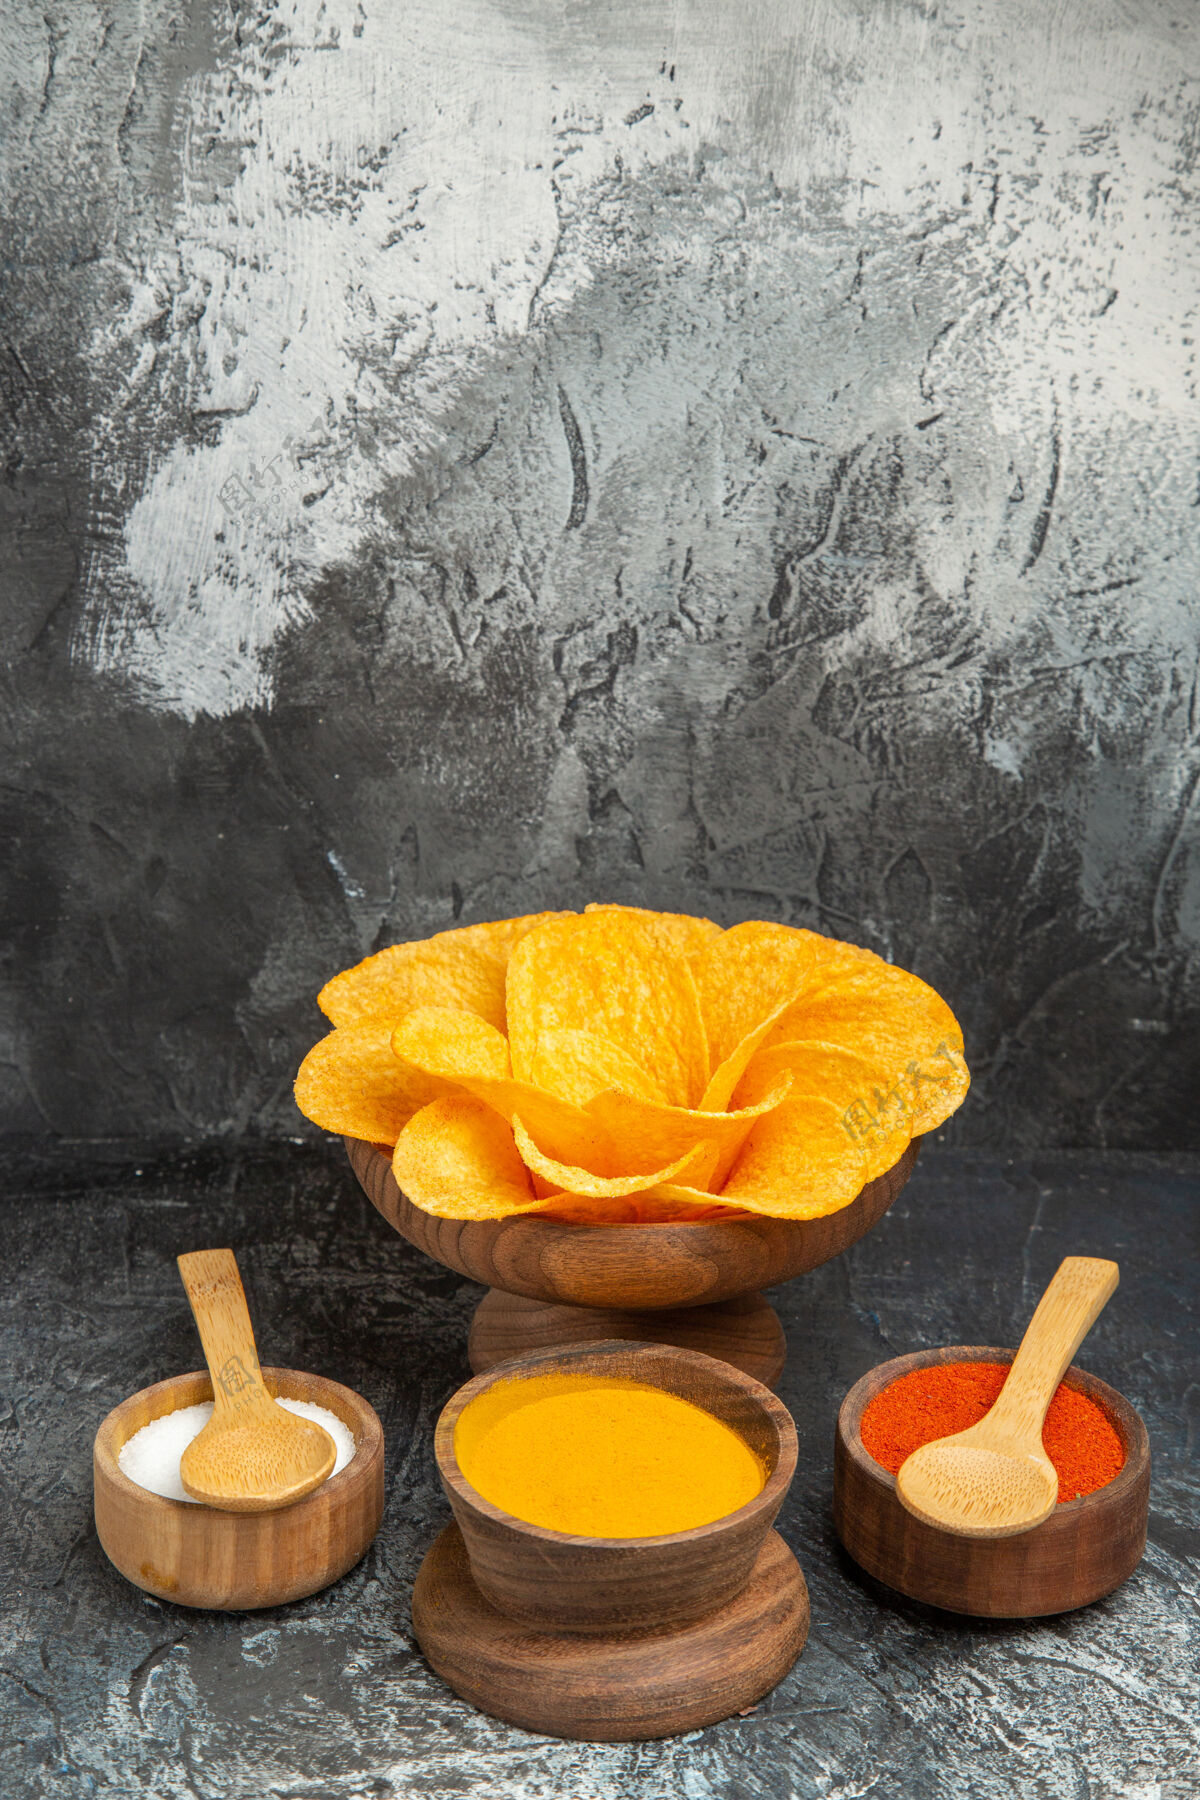 果汁灰色桌子上装饰成花朵形状和不同香料的脆皮薯片的垂直视图鲜花食品香料